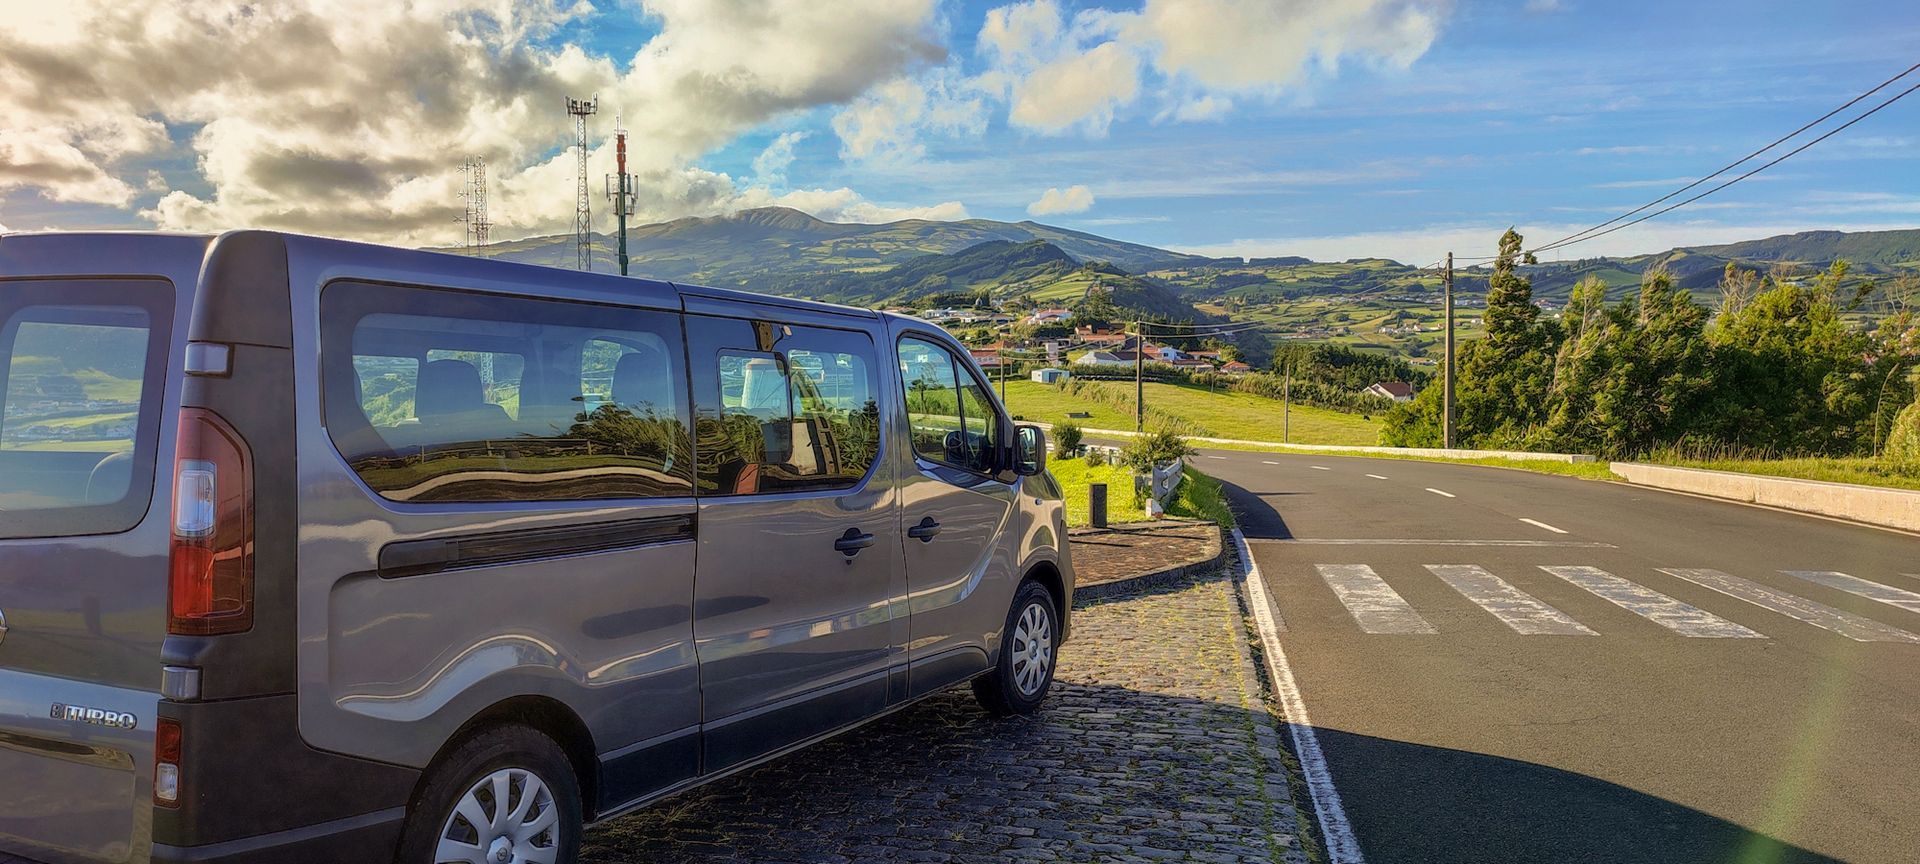 Excursões, Tours e Visitas Guiadas de dia inteiro na ilha do Faial Açores.